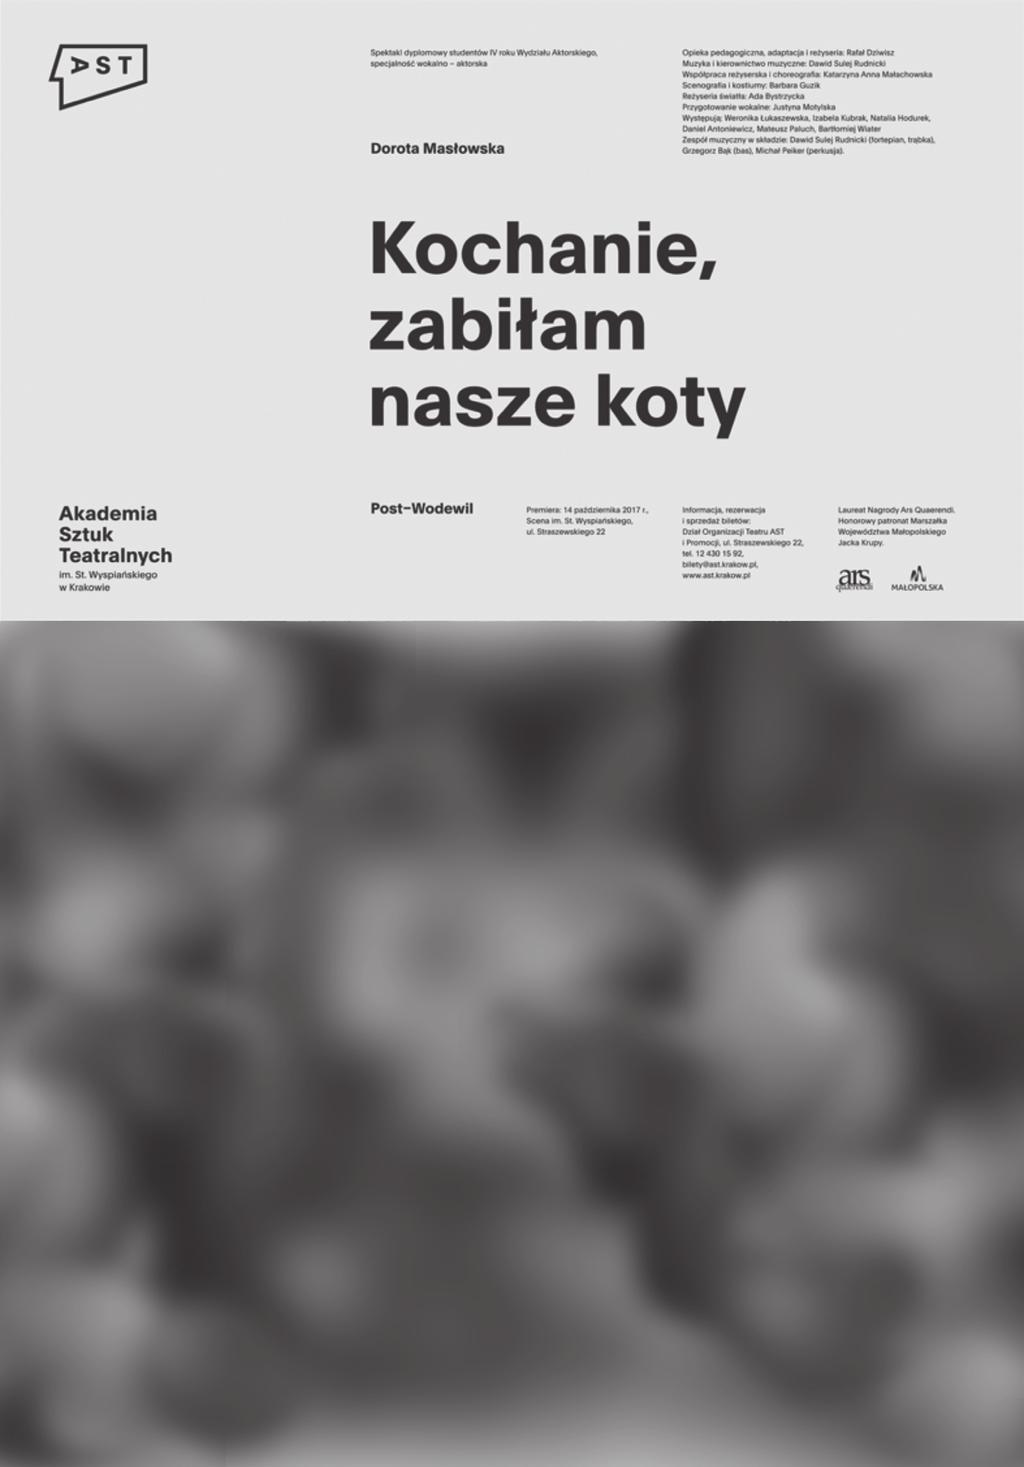 Akademia Sztuk Teatralnych im. St. Wyspiańskiego w Krakowie / Księga identyfikacji wizualnej 15 1 Plakat przedstawienia dyplomowego, format 700 1000 mm.